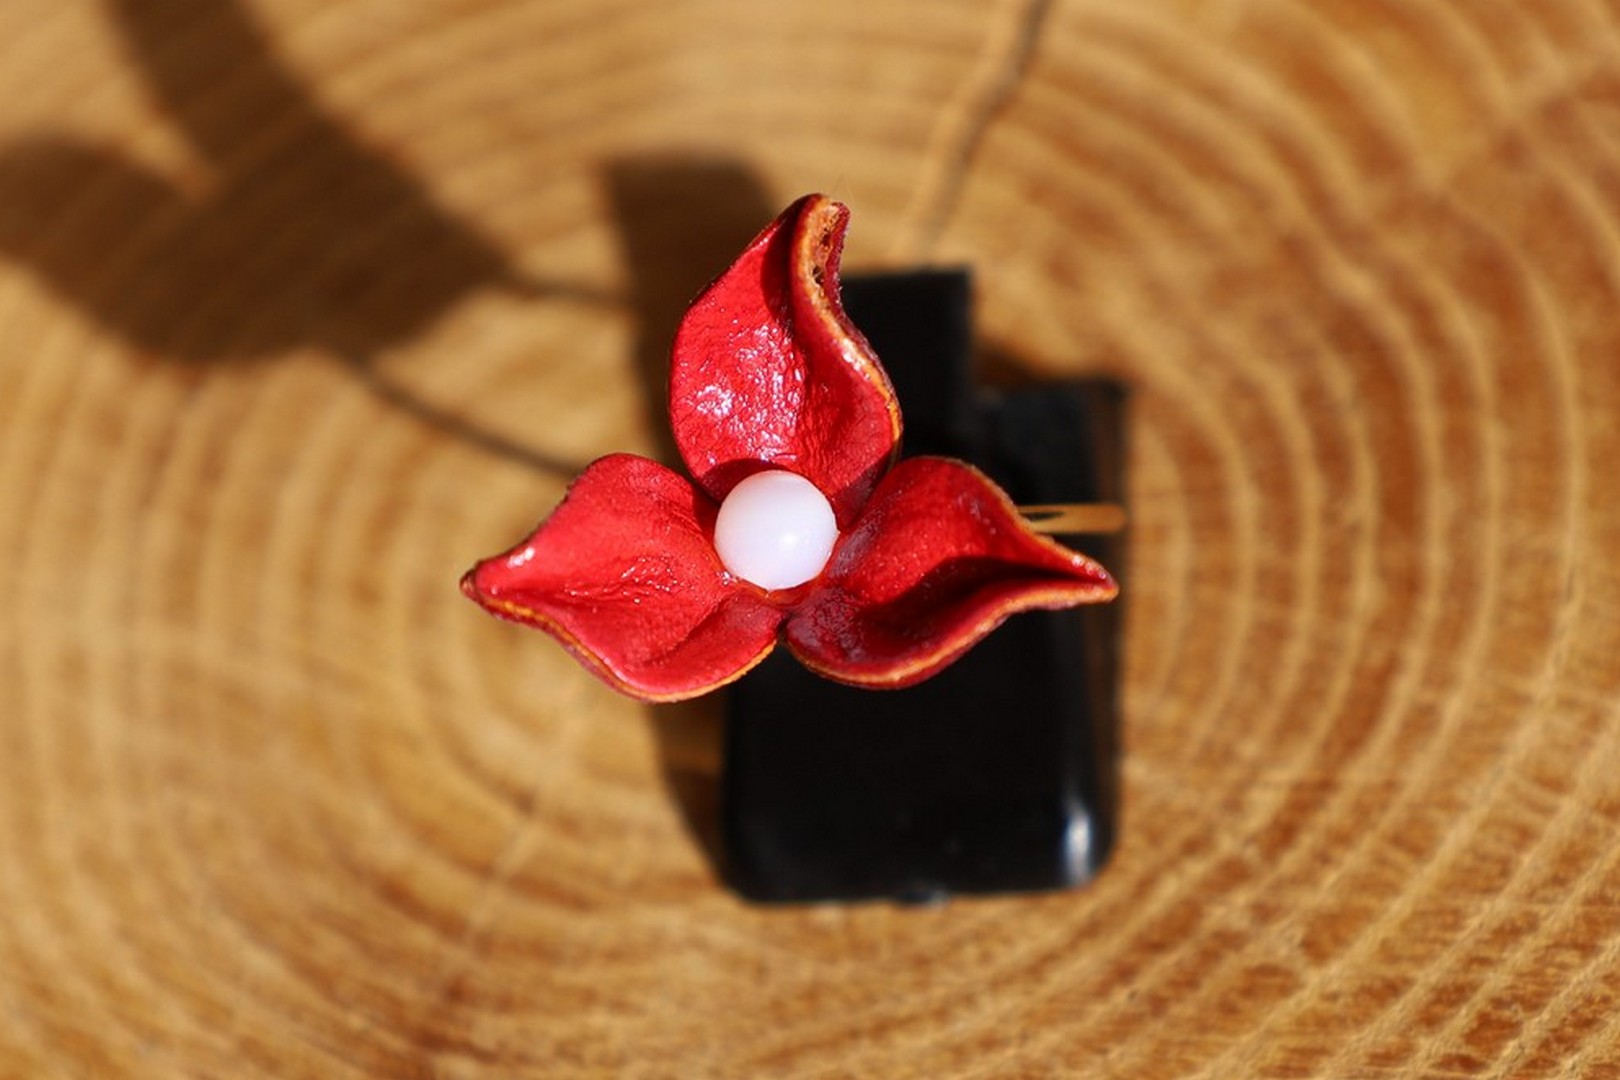 bague fleur rouge, cuir végétal, l'âge du cuir, maroquinerie artisanale, Dordogne, France